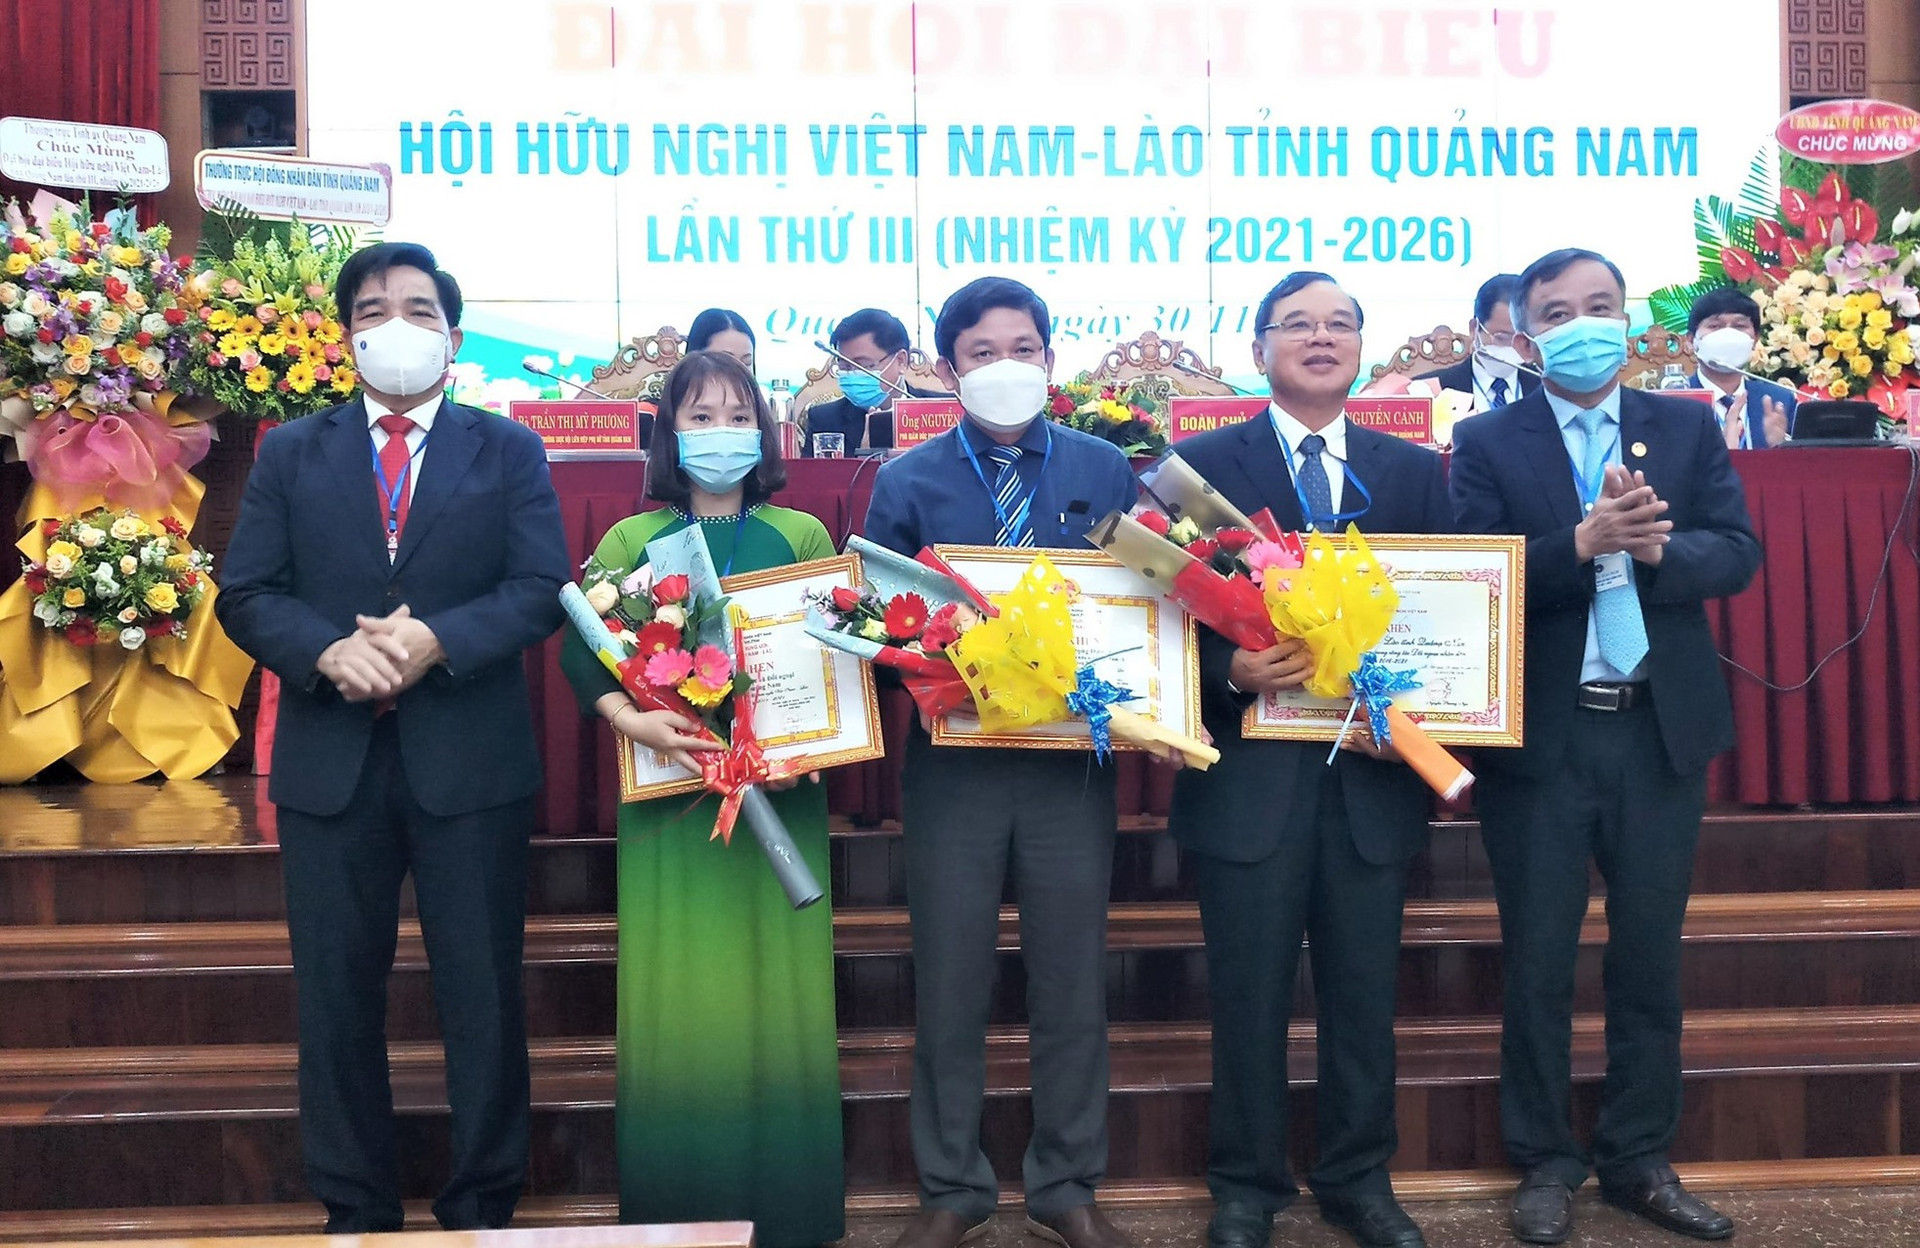 Các cá nhân, tập thể nhận bằng khen của Trung ương Hội Hữu nghị Việt Nam - Lào. Ảnh: A.N